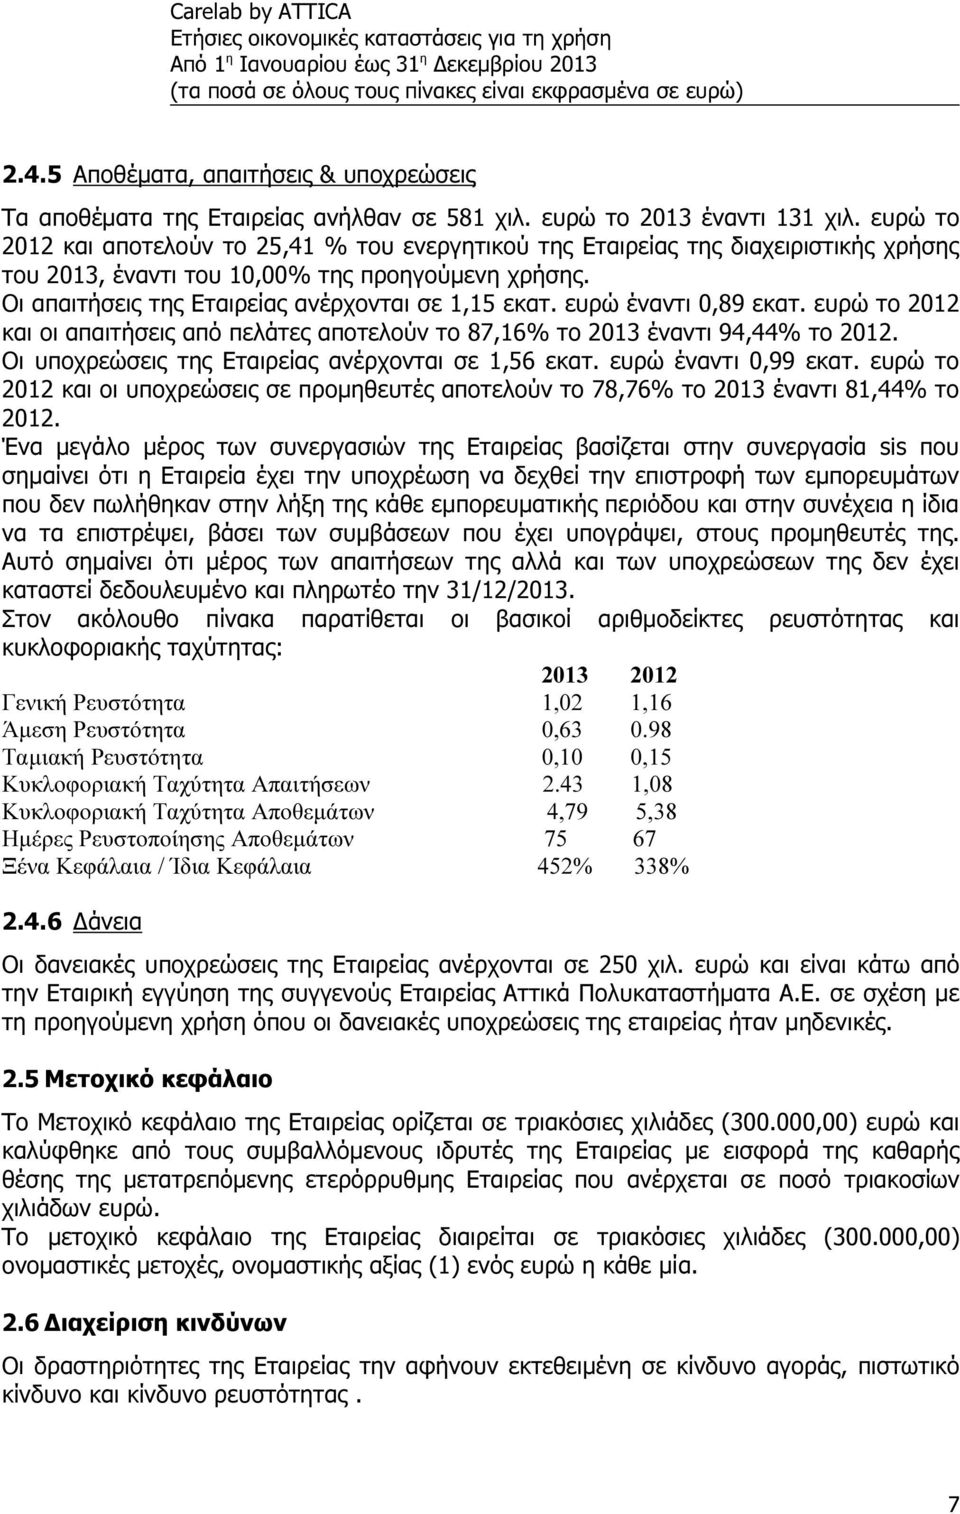 ευρώ έναντι 0,89 εκατ. ευρώ το 2012 και οι απαιτήσεις από πελάτες αποτελούν το 87,16% το 2013 έναντι 94,44% το 2012. Οι υποχρεώσεις της Εταιρείας ανέρχονται σε 1,56 εκατ. ευρώ έναντι 0,99 εκατ.